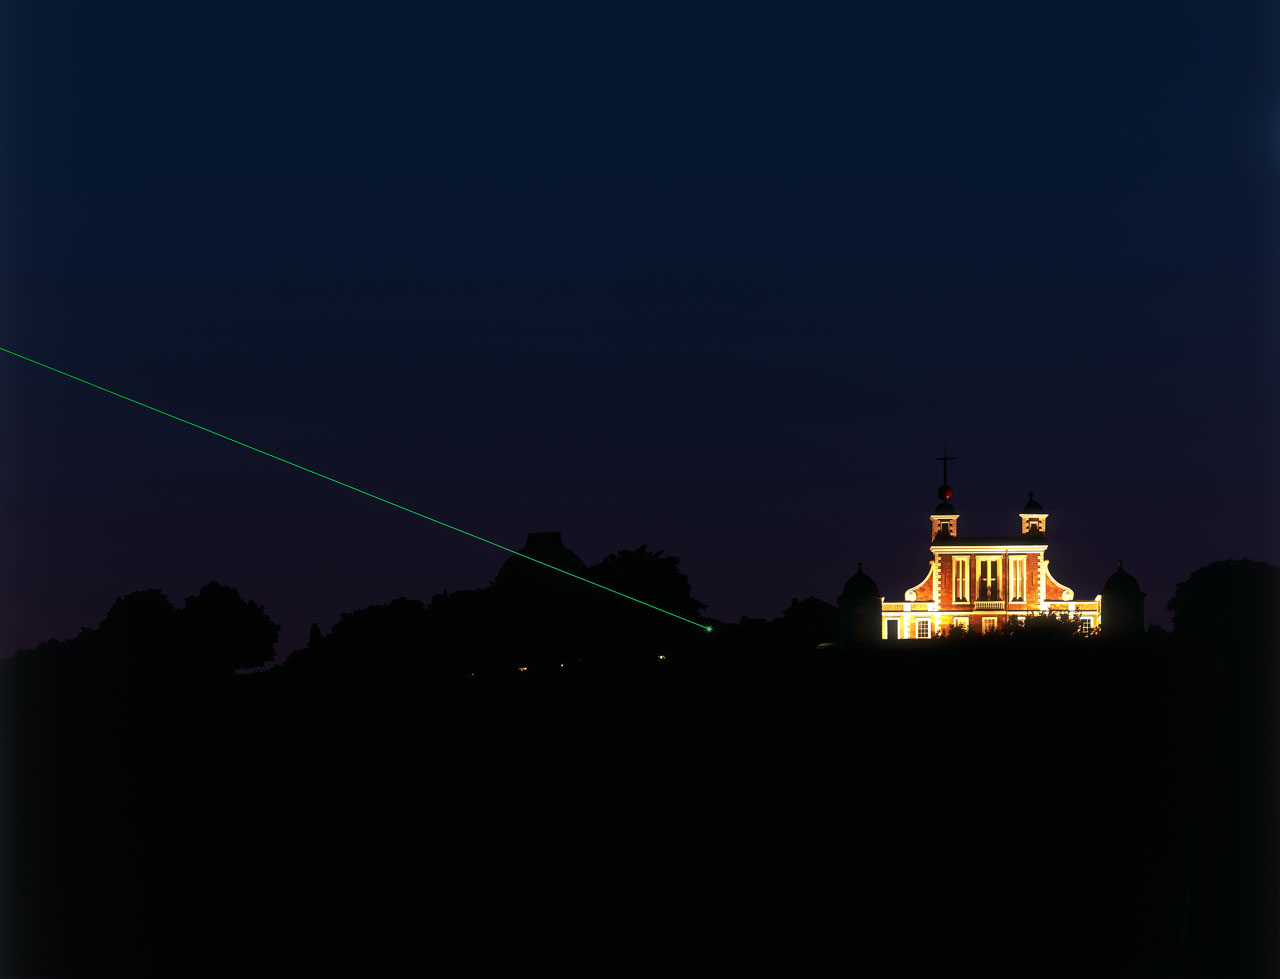 Гринвичская обсерватория и лазер Нулевого меридиана